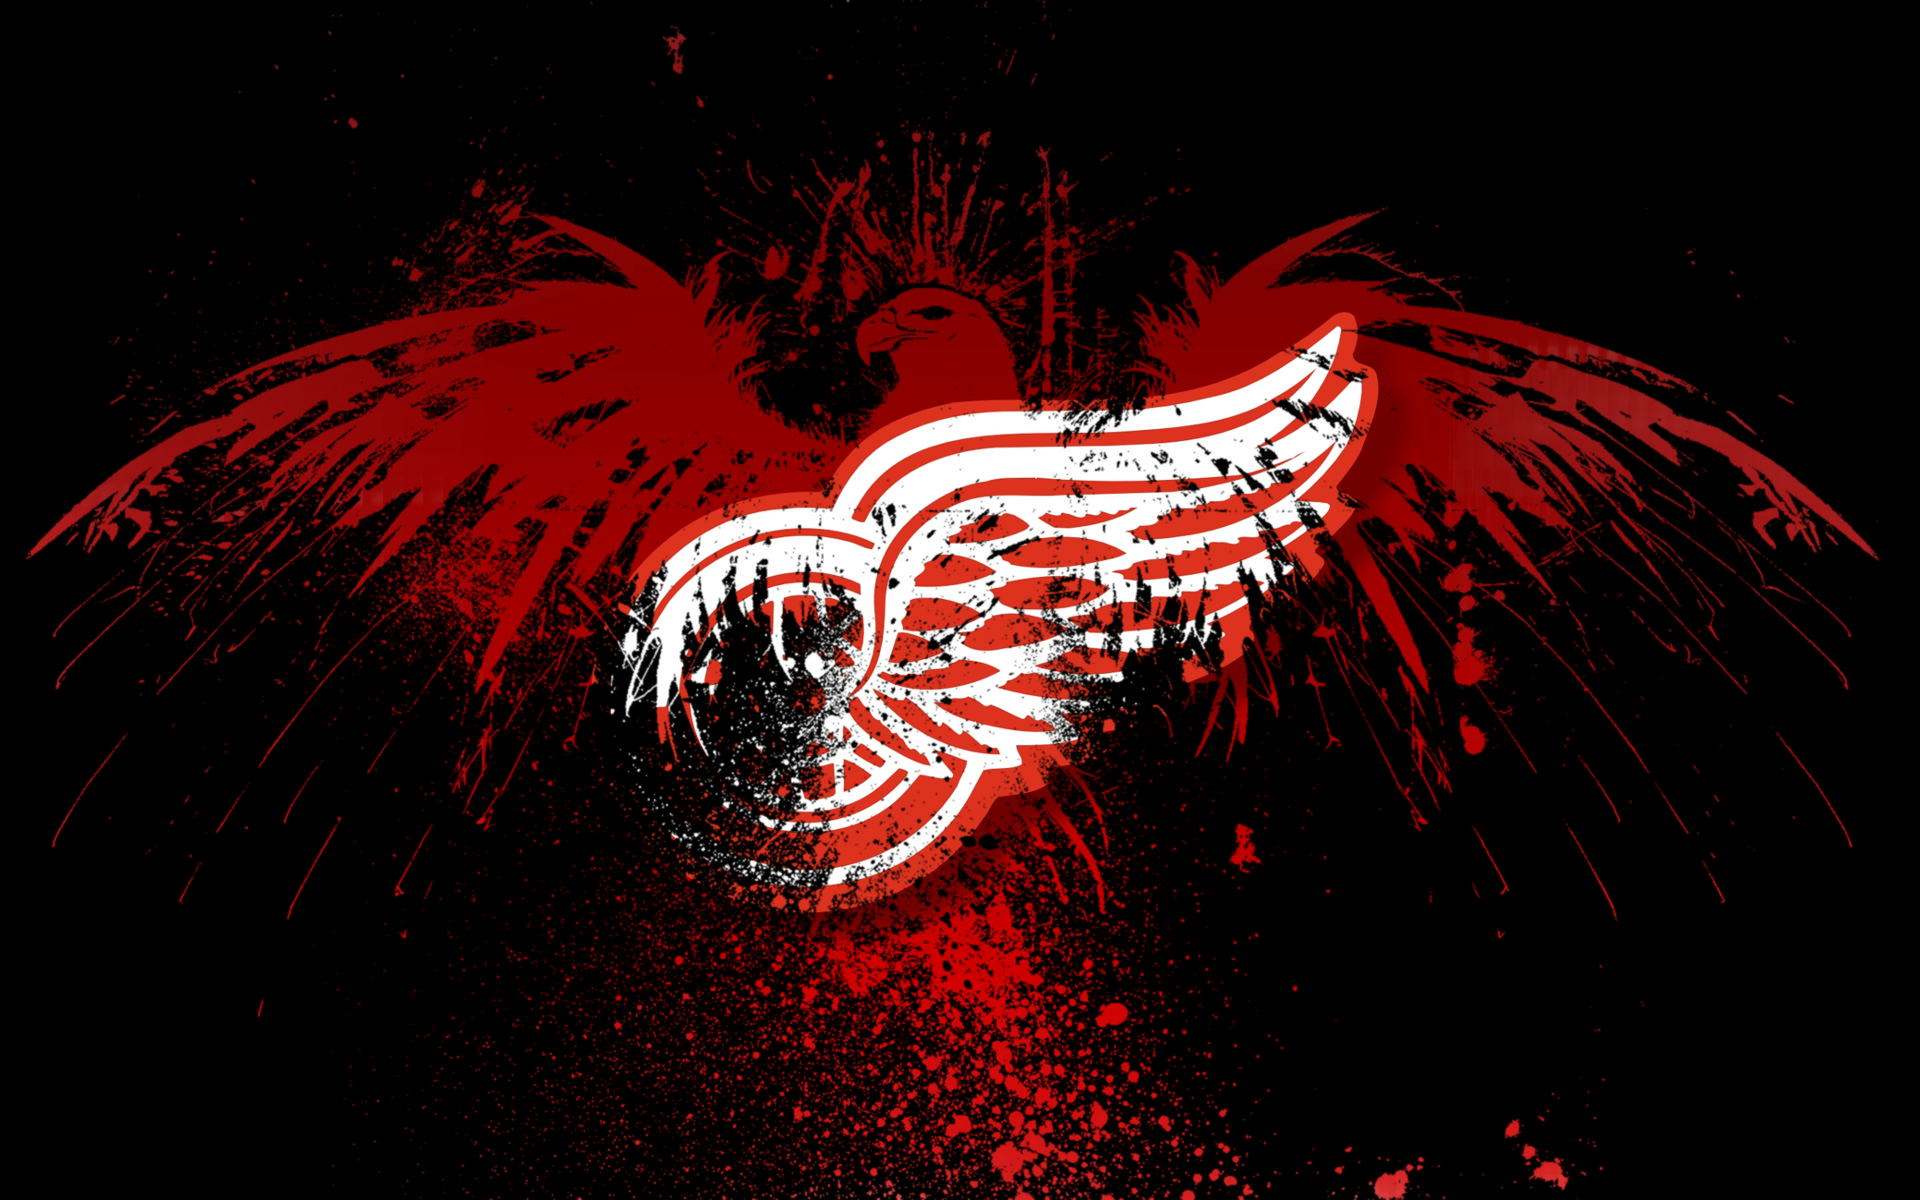 Detroit Red Wings Wallpaper Designs Amp Trivia